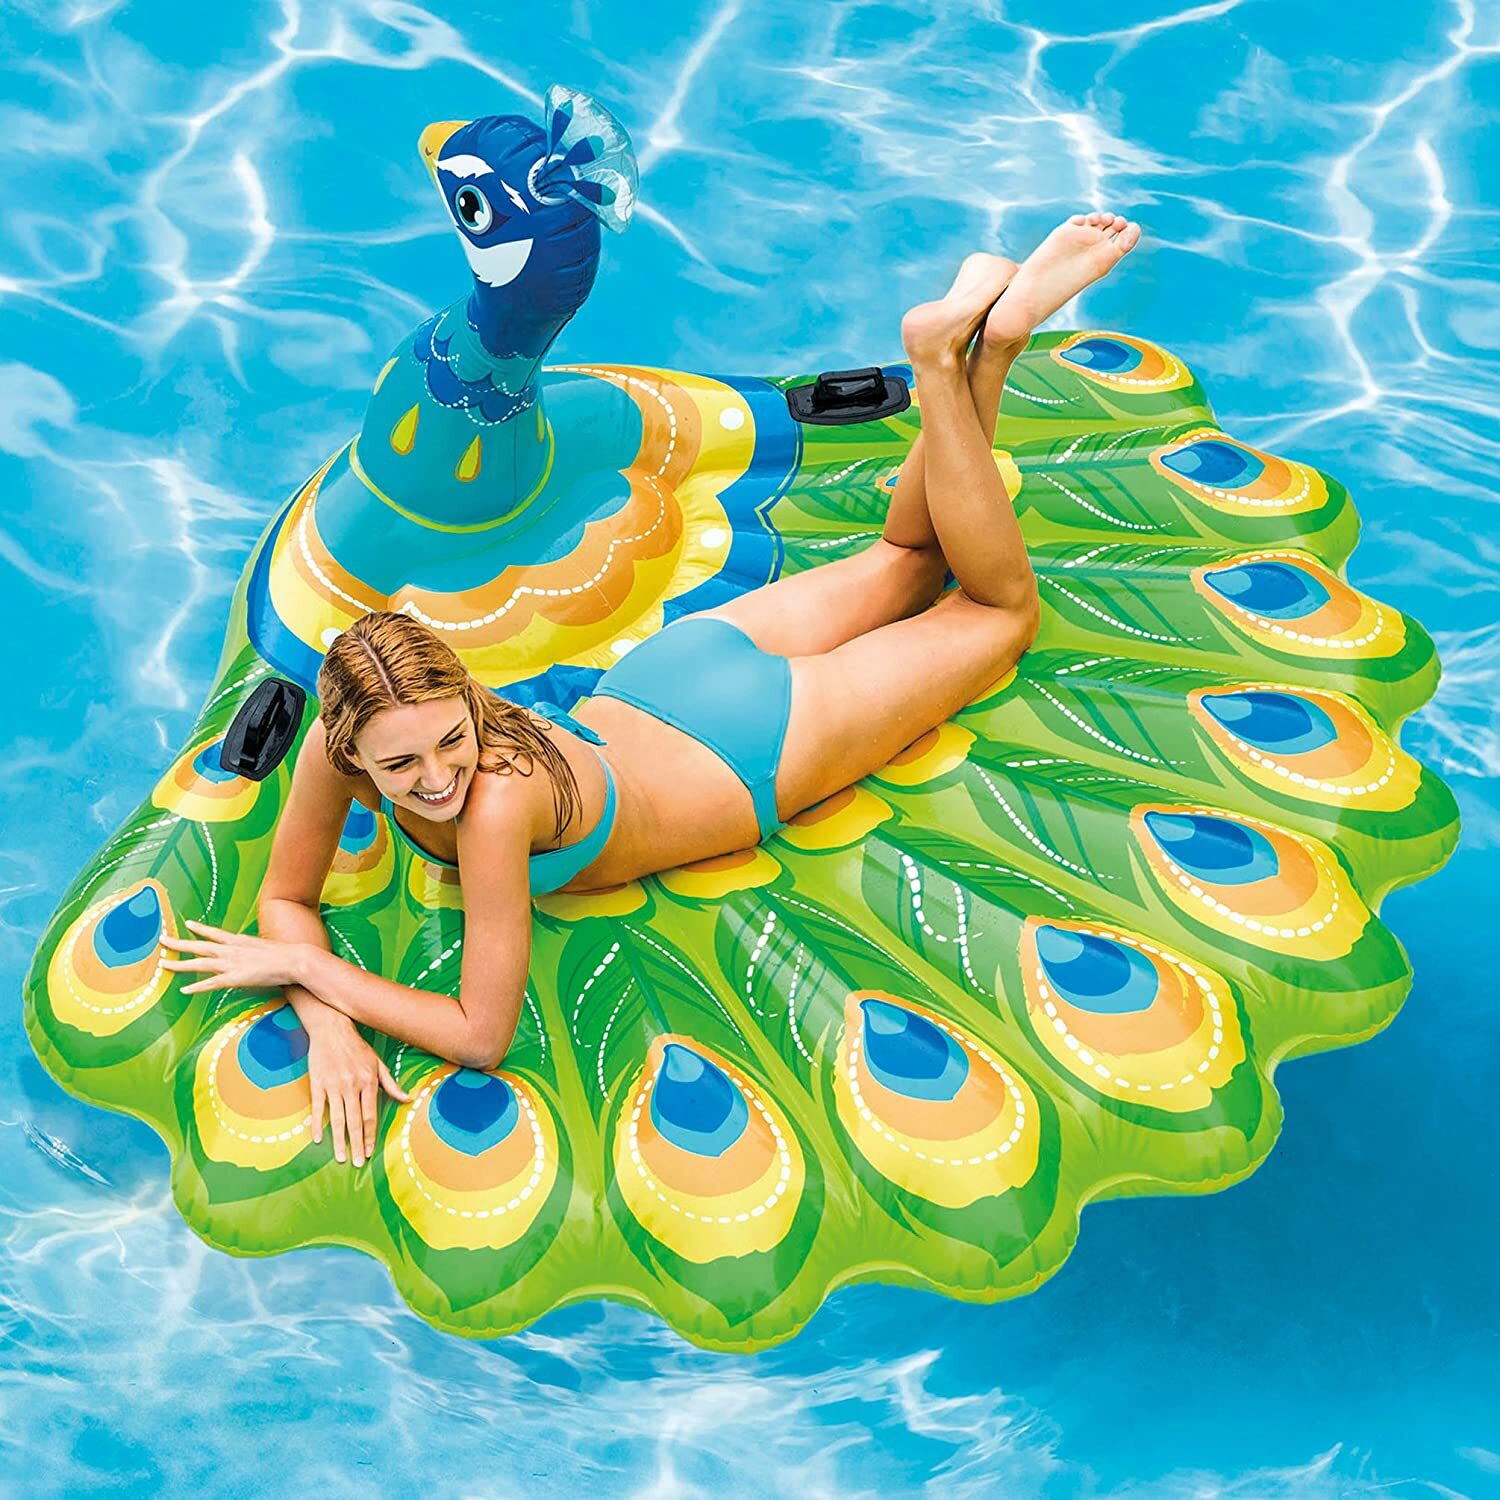 Cool NIB Poo 62 inch Wink Pool Float Nerd EMOJI Raft Inflatable Water 